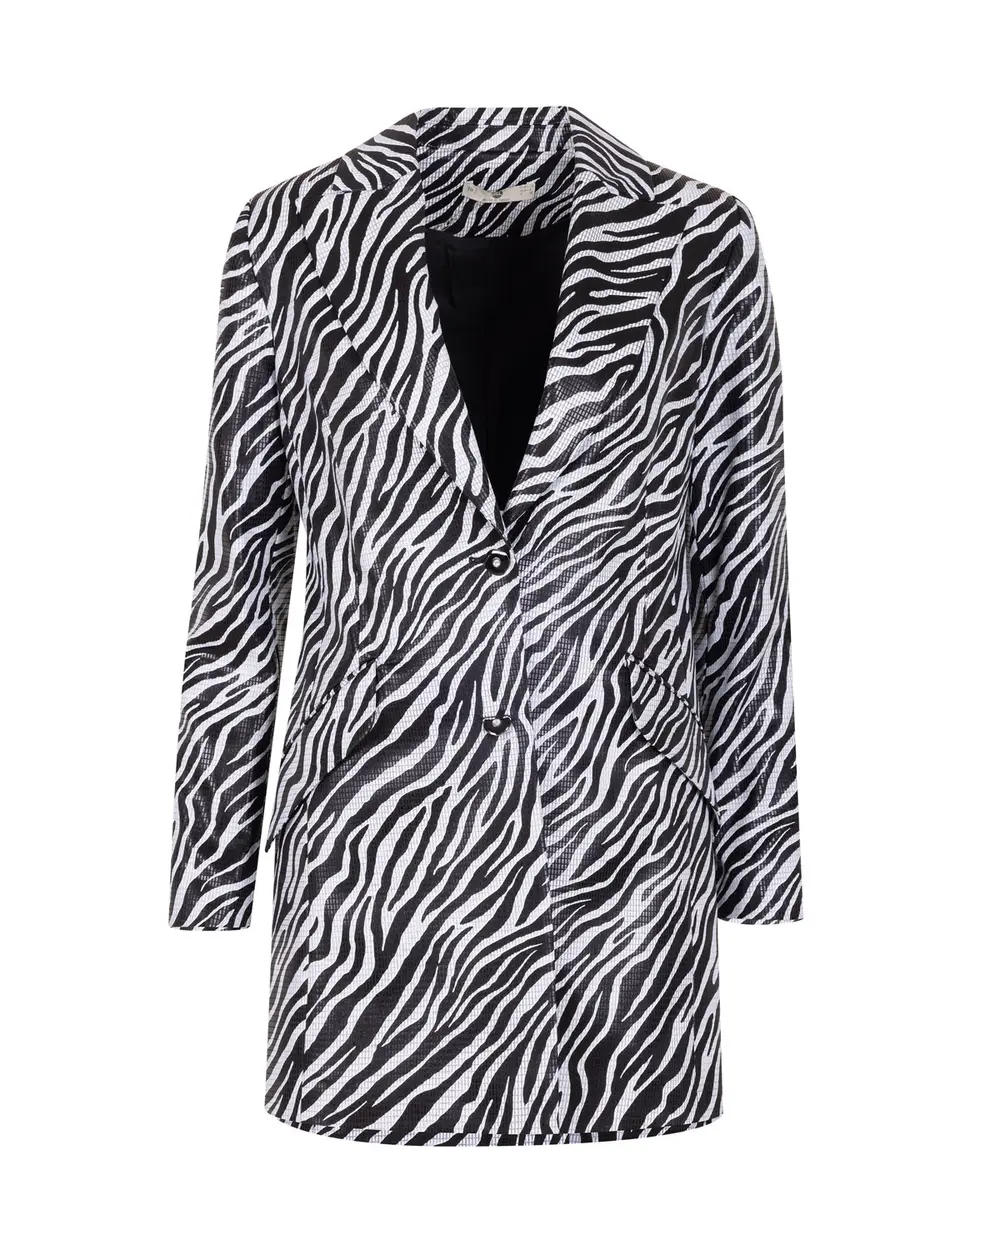 Zebra Patterned Blazer Jacket